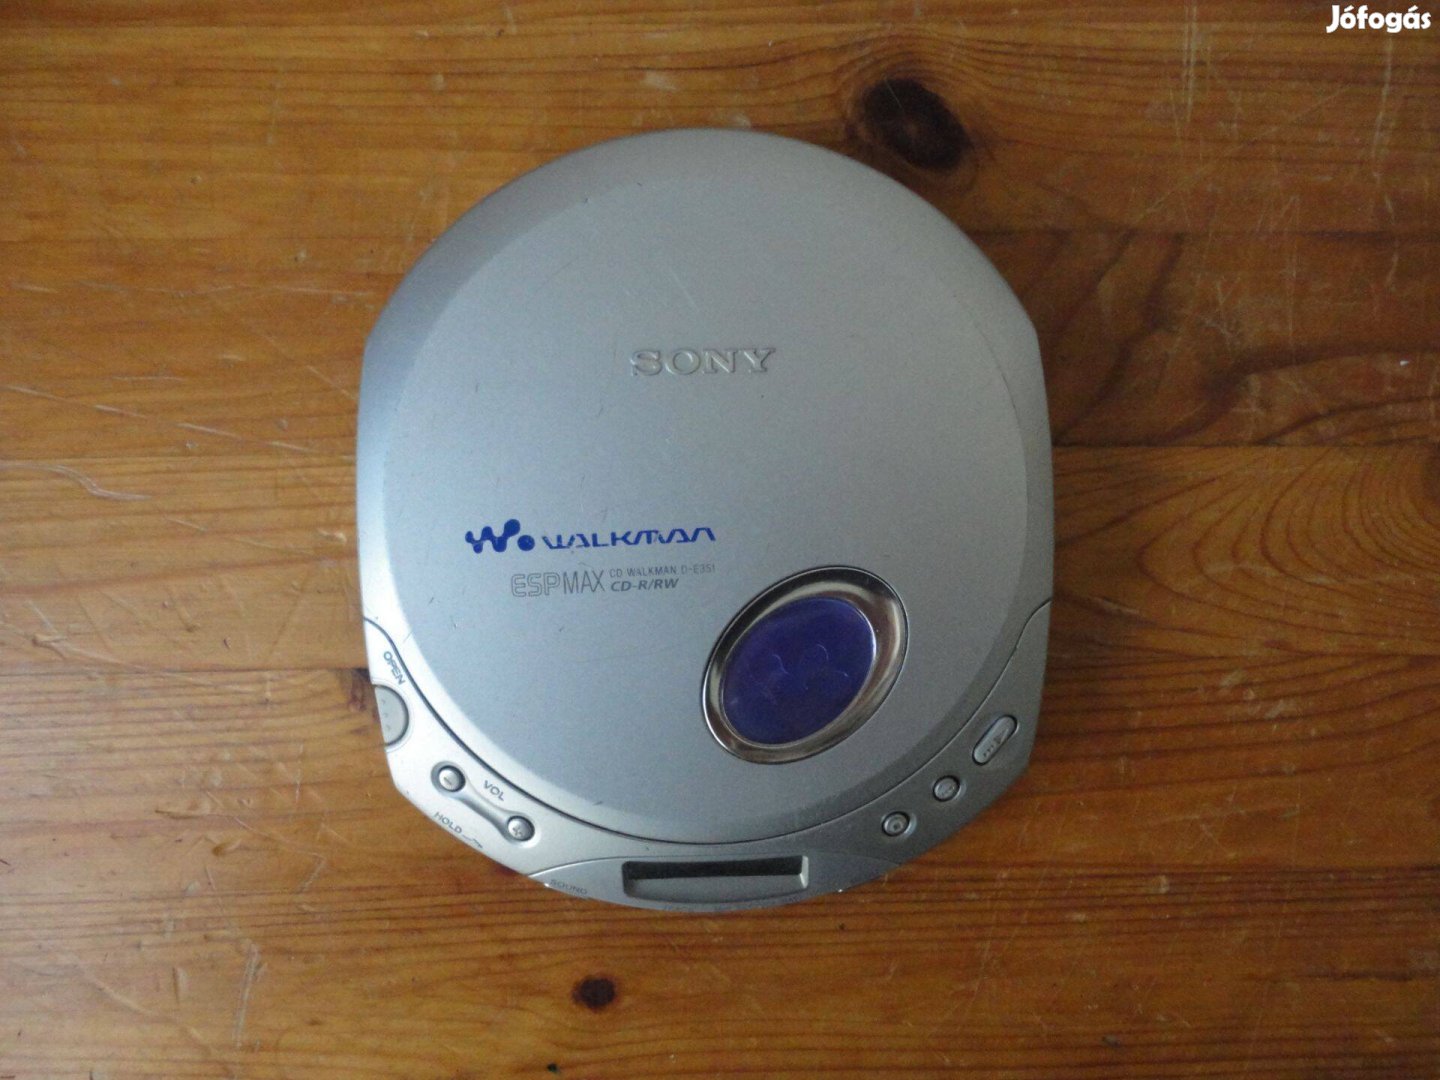 Sony D-E351 CD walkman, minden működik